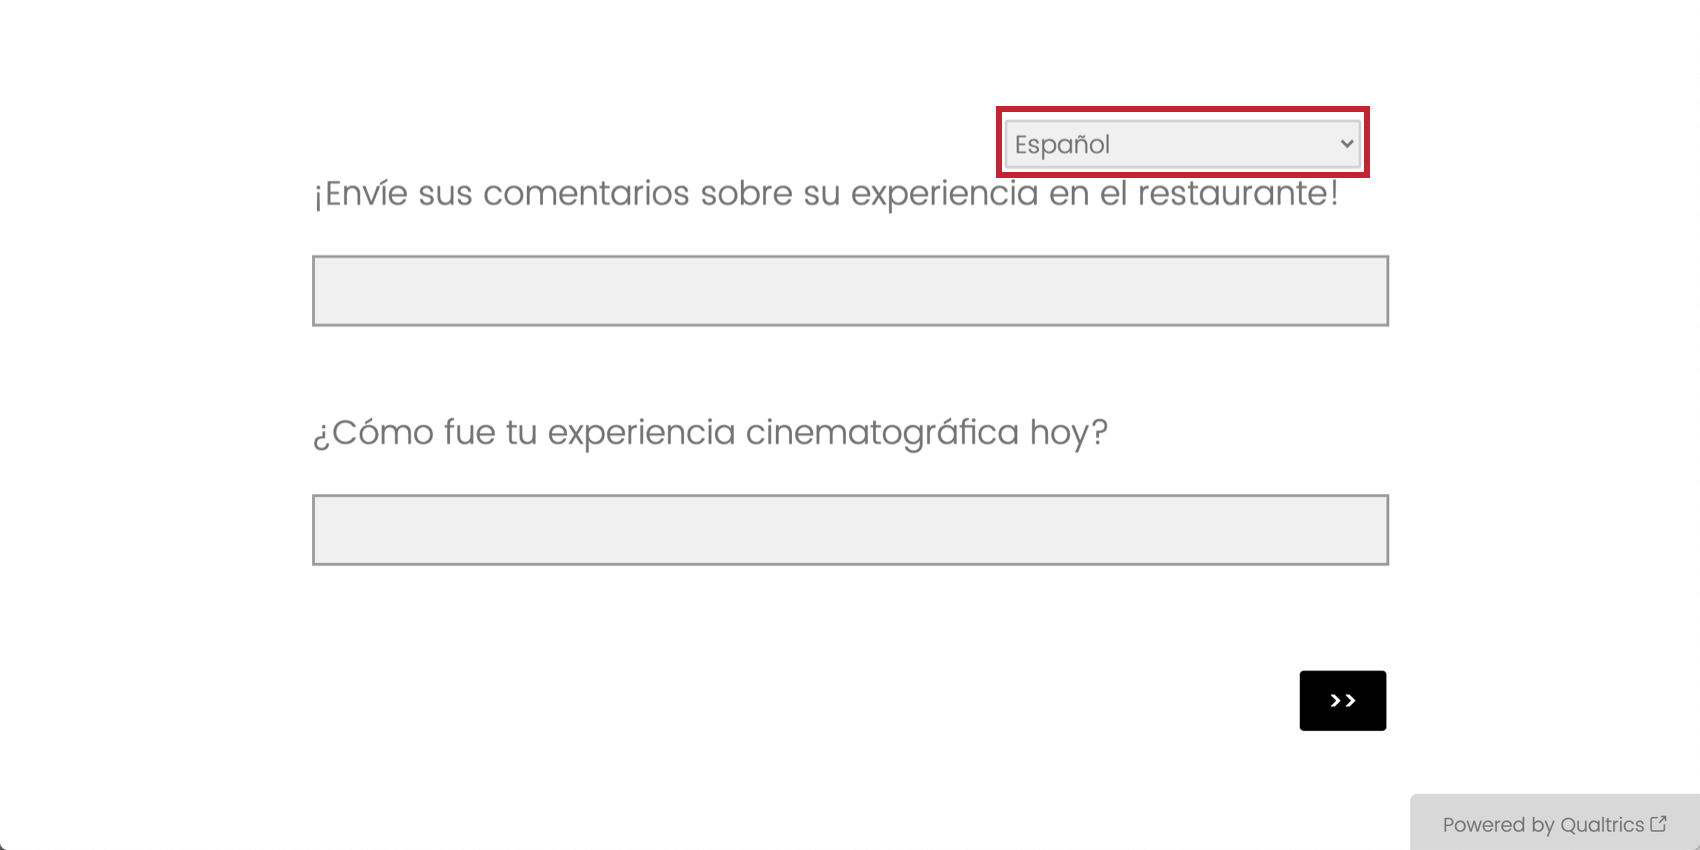 Translate Survey